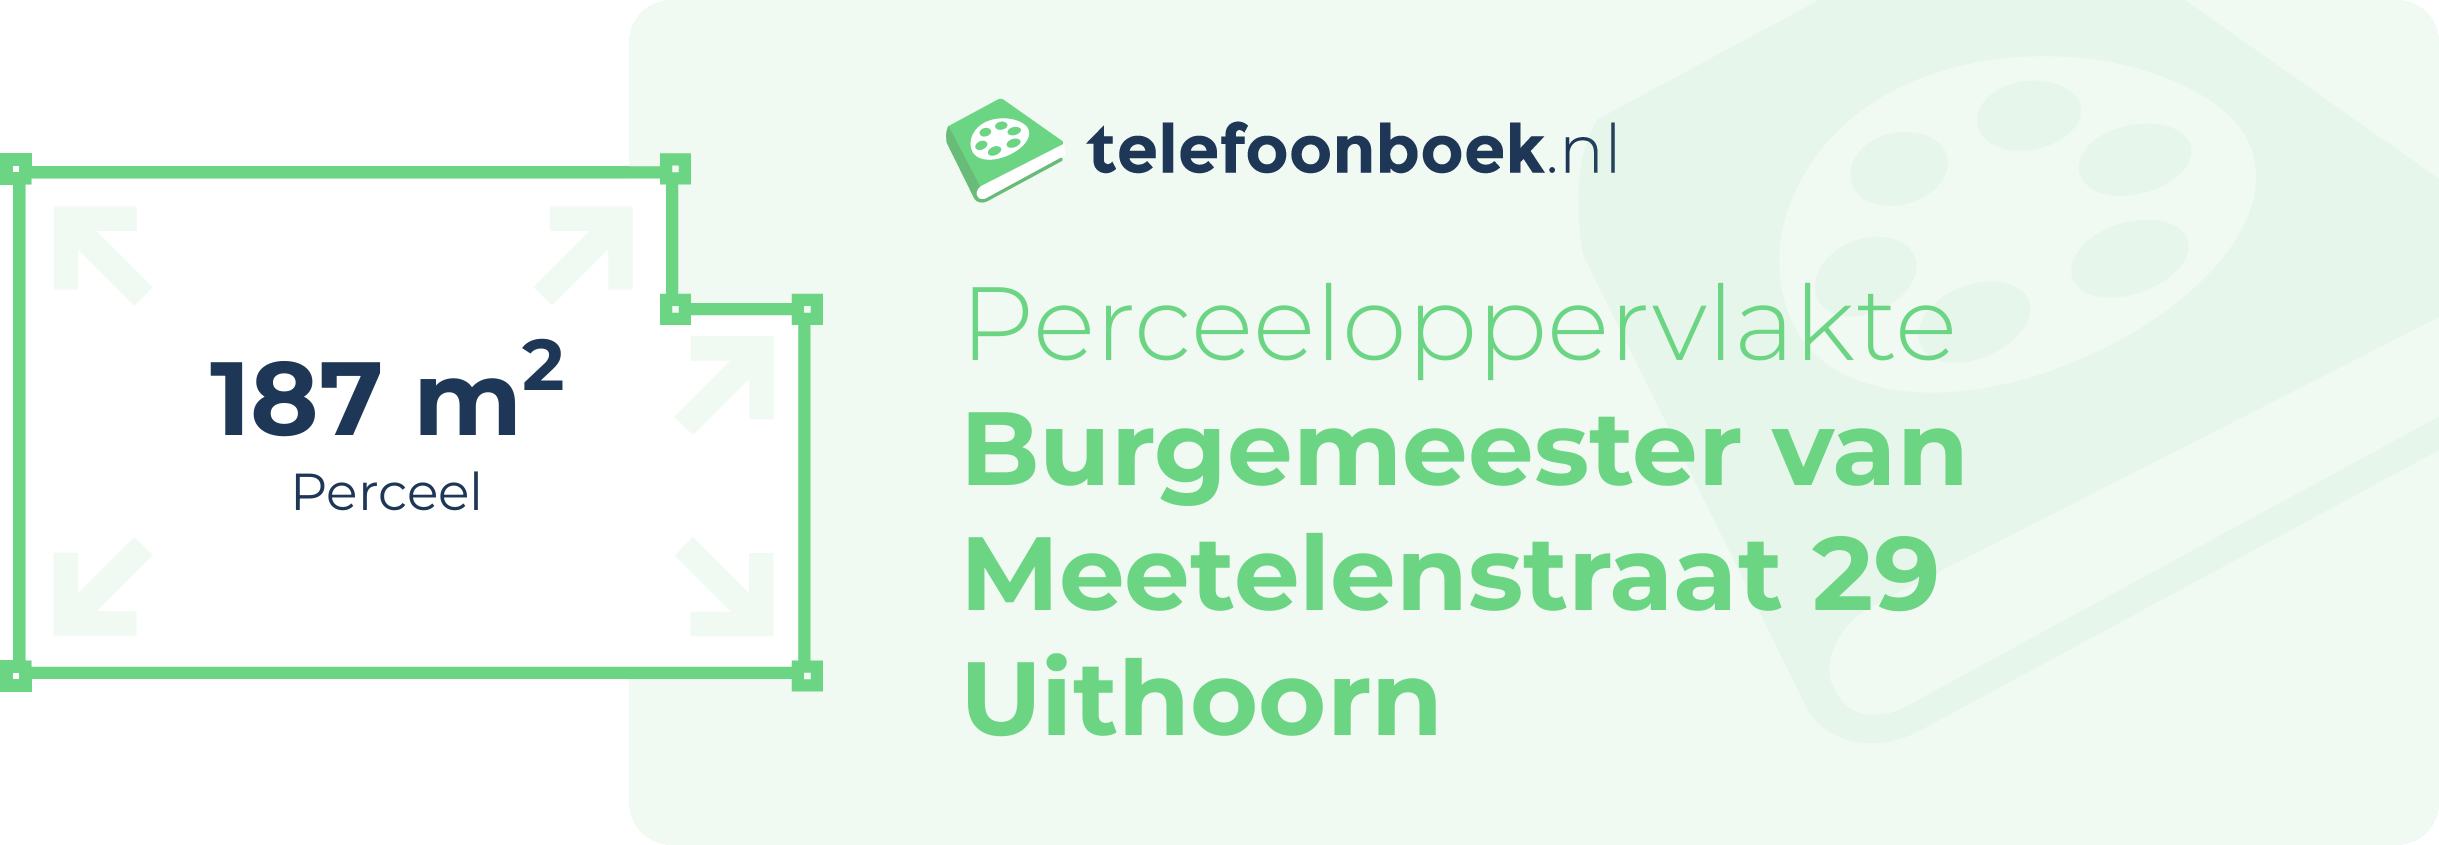 Perceeloppervlakte Burgemeester Van Meetelenstraat 29 Uithoorn